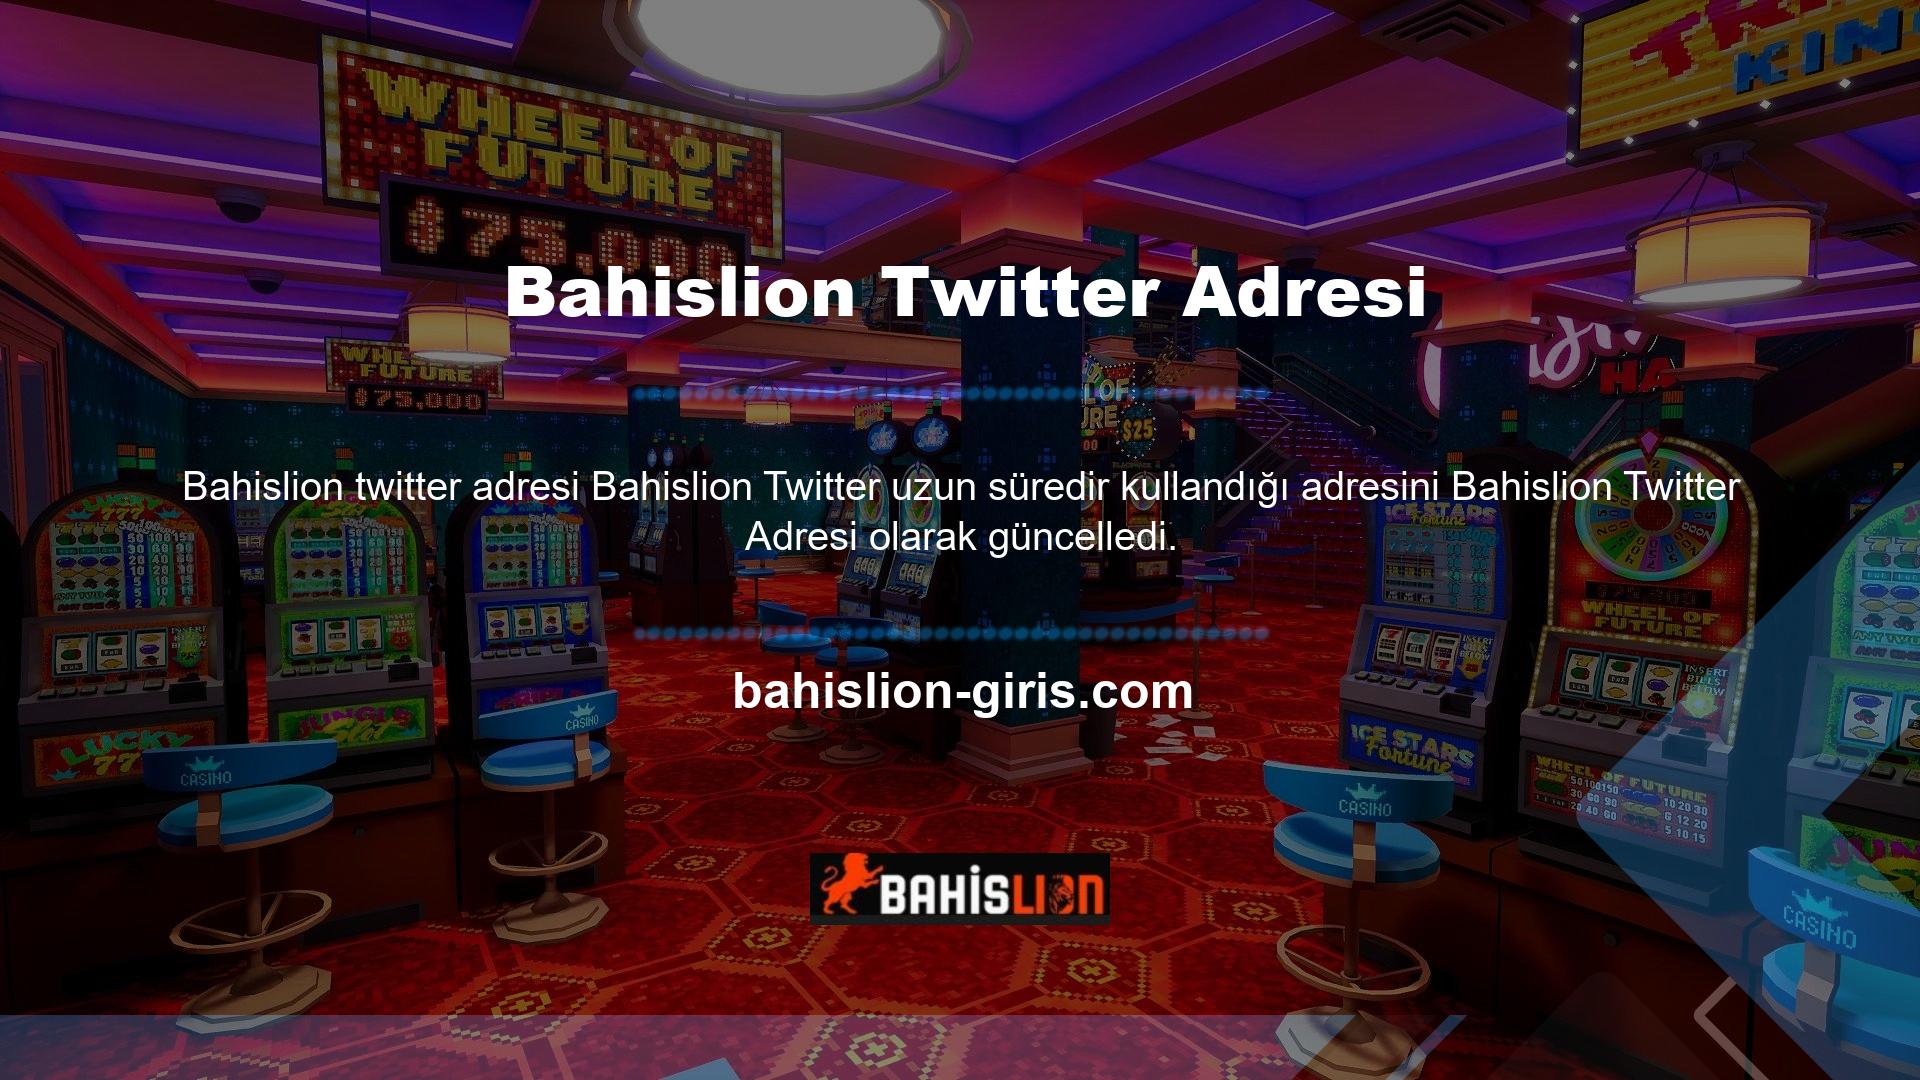 Tüm bahis siteleri zaman zaman adres değiştirmektedir ve Bahislion Twitter, kullanıcıların bu değişikliklerden etkilenmemesi ve yeni bir adrese taşınması için elinden geleni yapacaktır